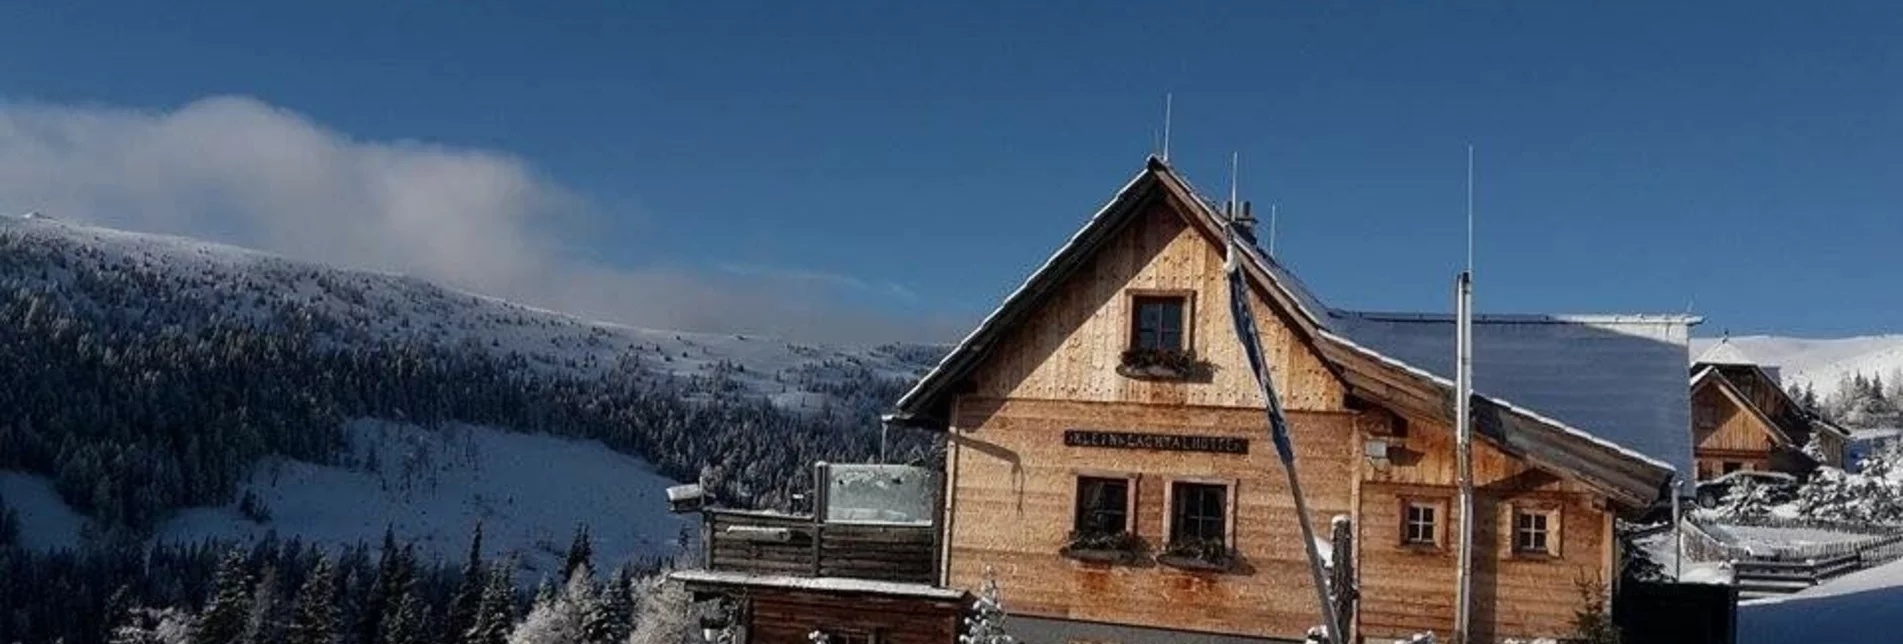 Winterwandern Kleinlachtalhütte - Touren-Impression #1 | © Tourismusverband Murau